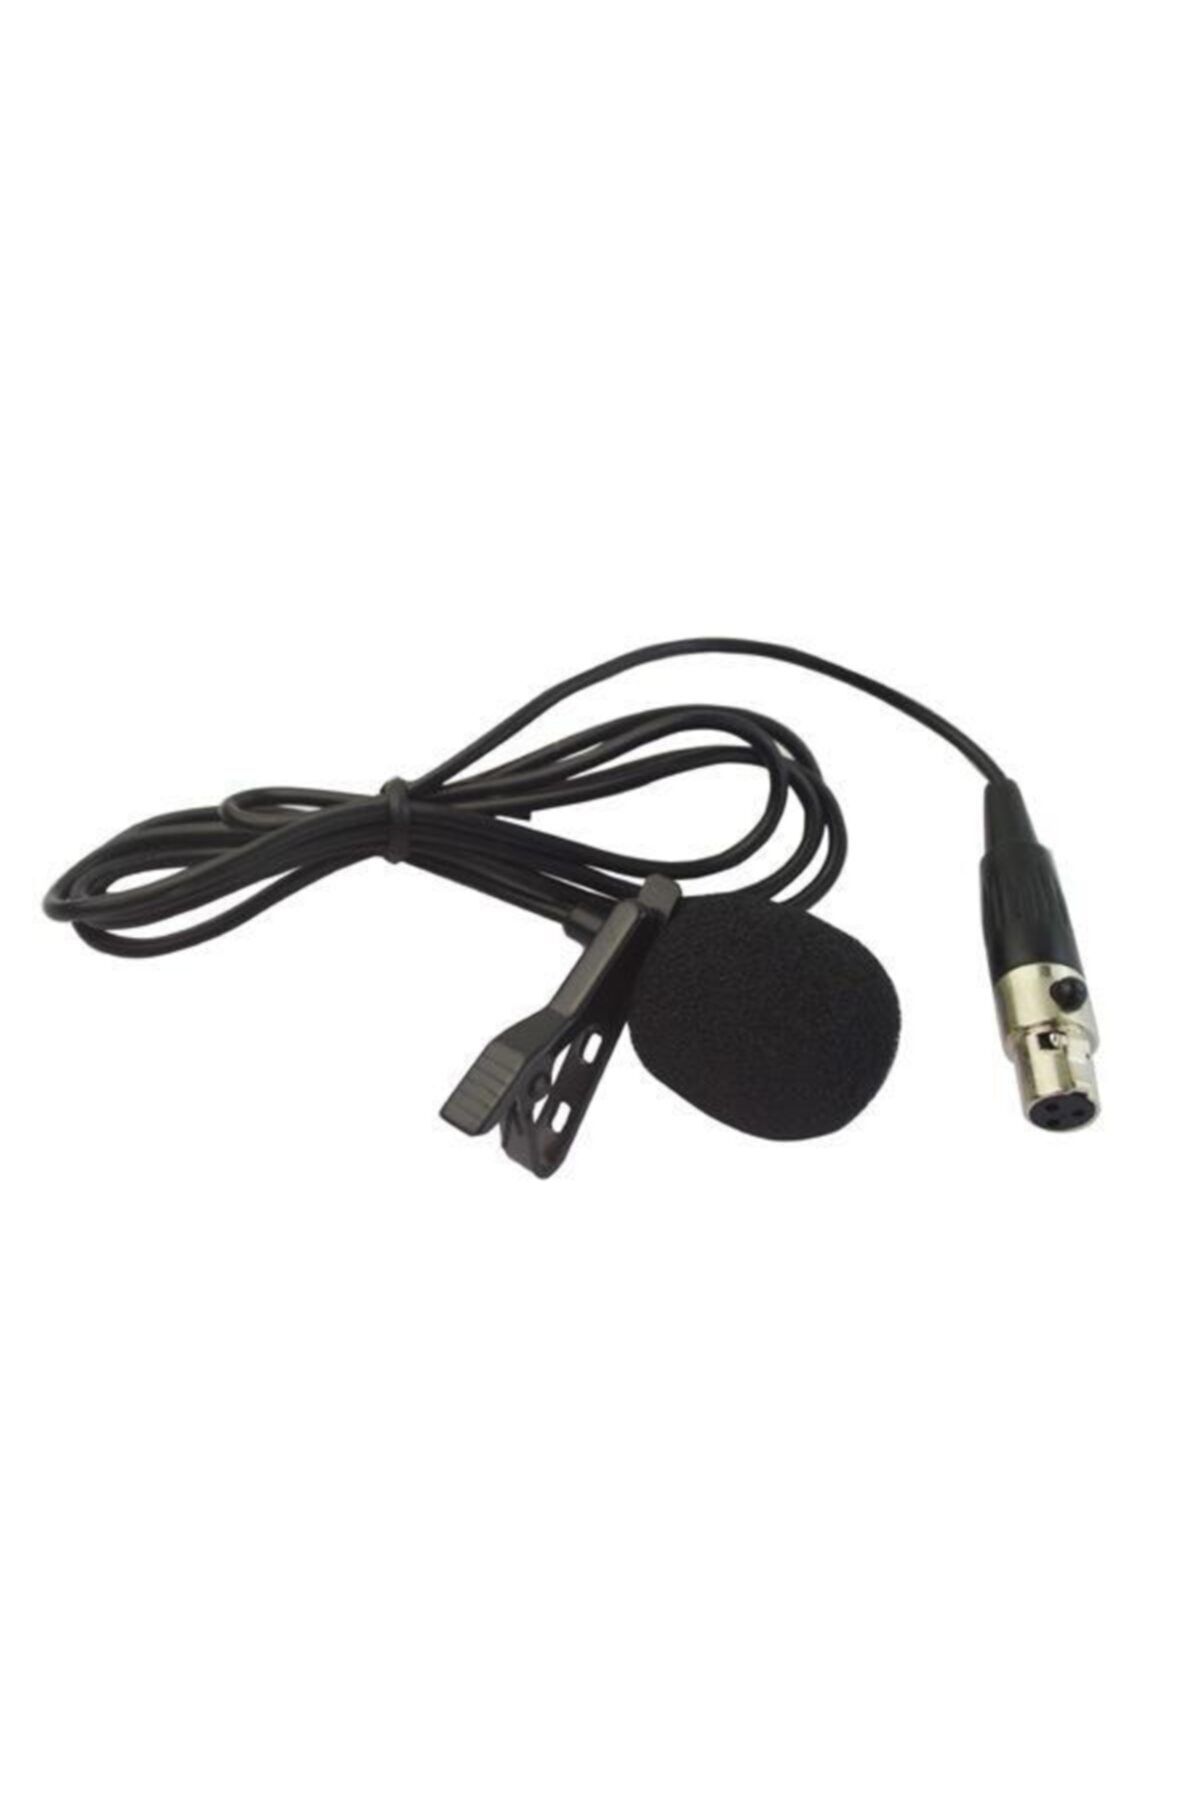 Gold Audio Pro L 47 Mini Xlr Headset